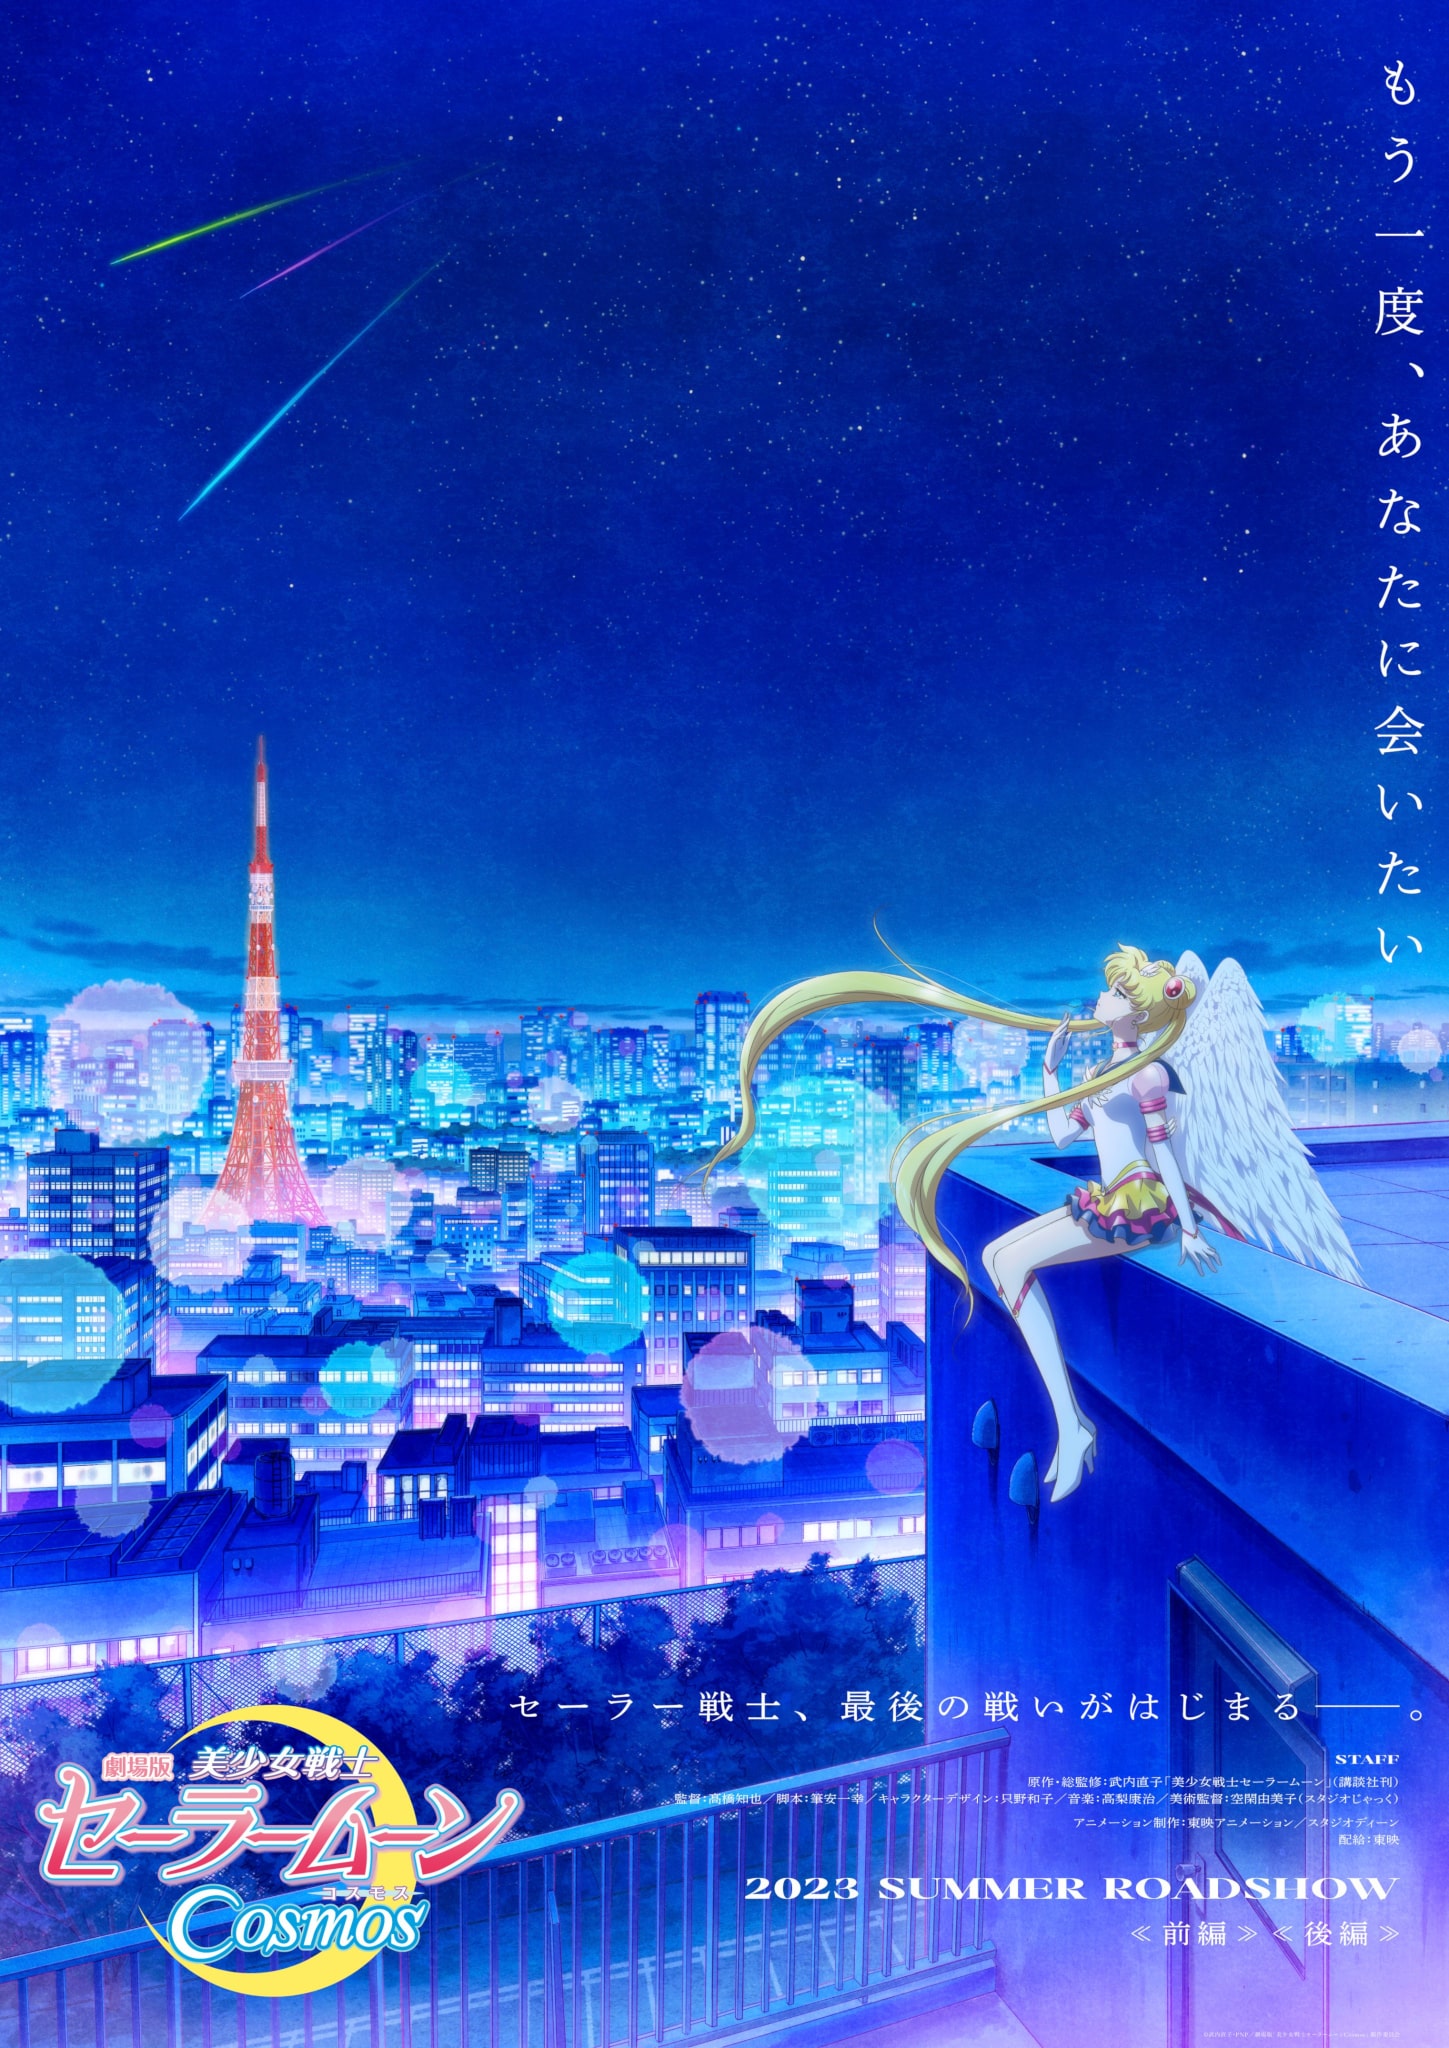 Premier visuel pour le film Pretty Guardian Sailor Moon Cosmos